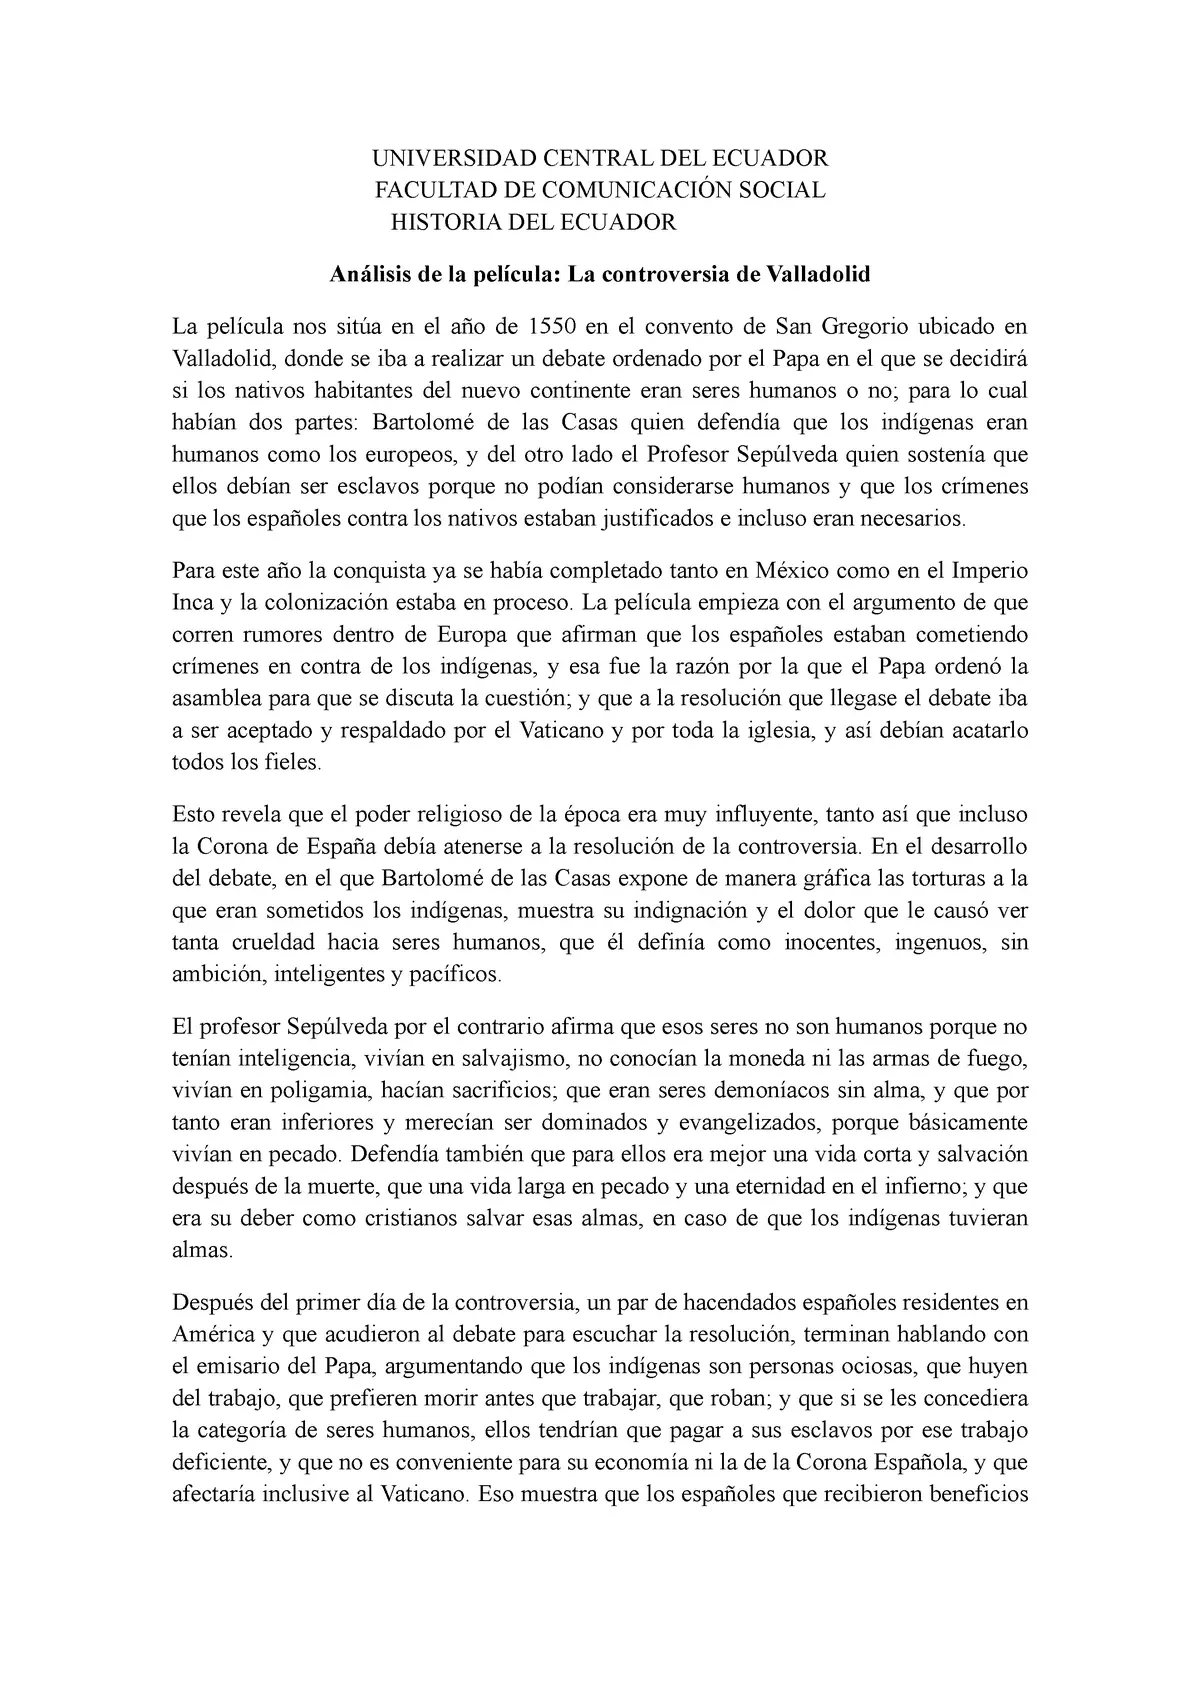 controversia de valladolid resumen - Qué fue la disputa de Valladolid